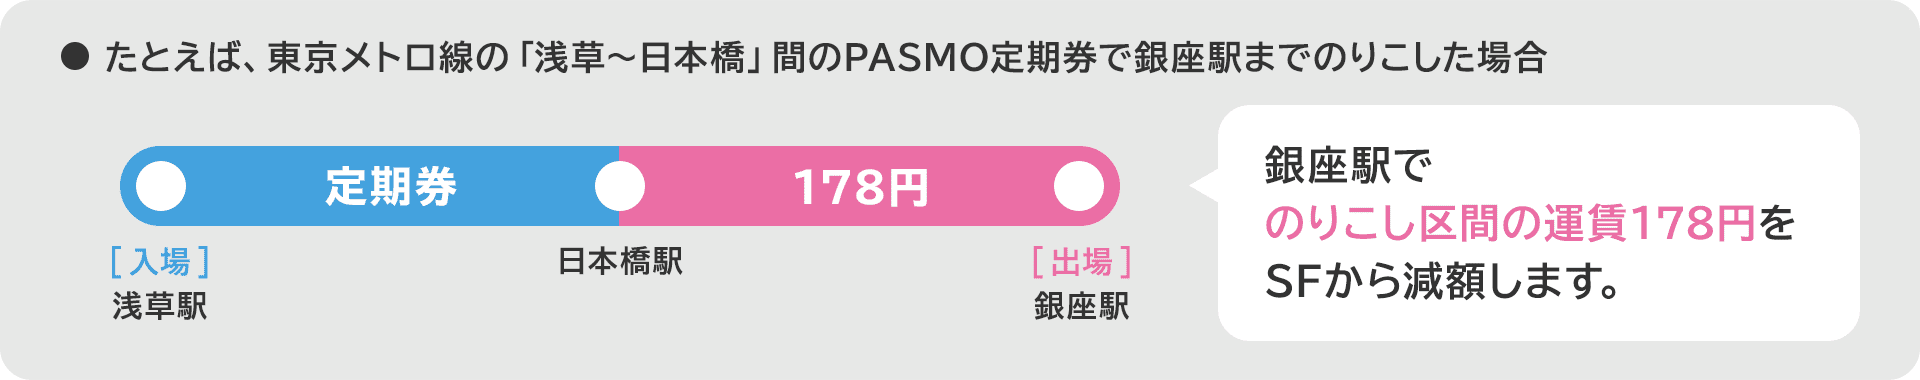 たとえば、東京メトロ線の「浅草〜日本橋」間のPASMO定期券で銀座駅までのりこした場合、銀座駅でのりこし区間の運賃168円をSFから減額します。